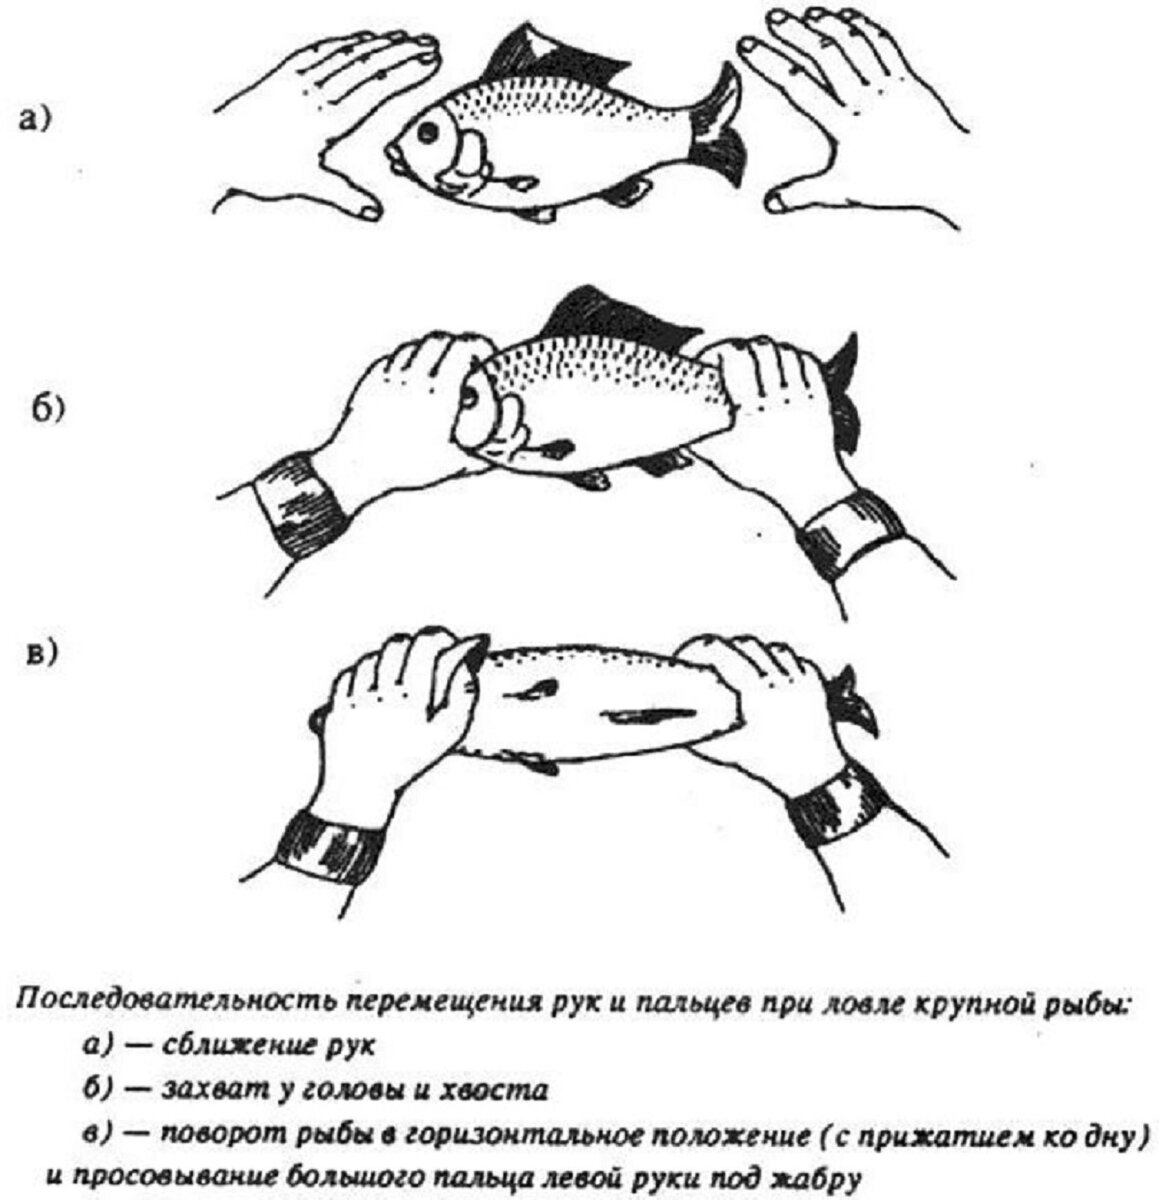 Поймать живую рыбу руками. Ловля рыбы руками. Поймать рыбу руками. Рыба с руками. Как правильно ловить рыбу руками.